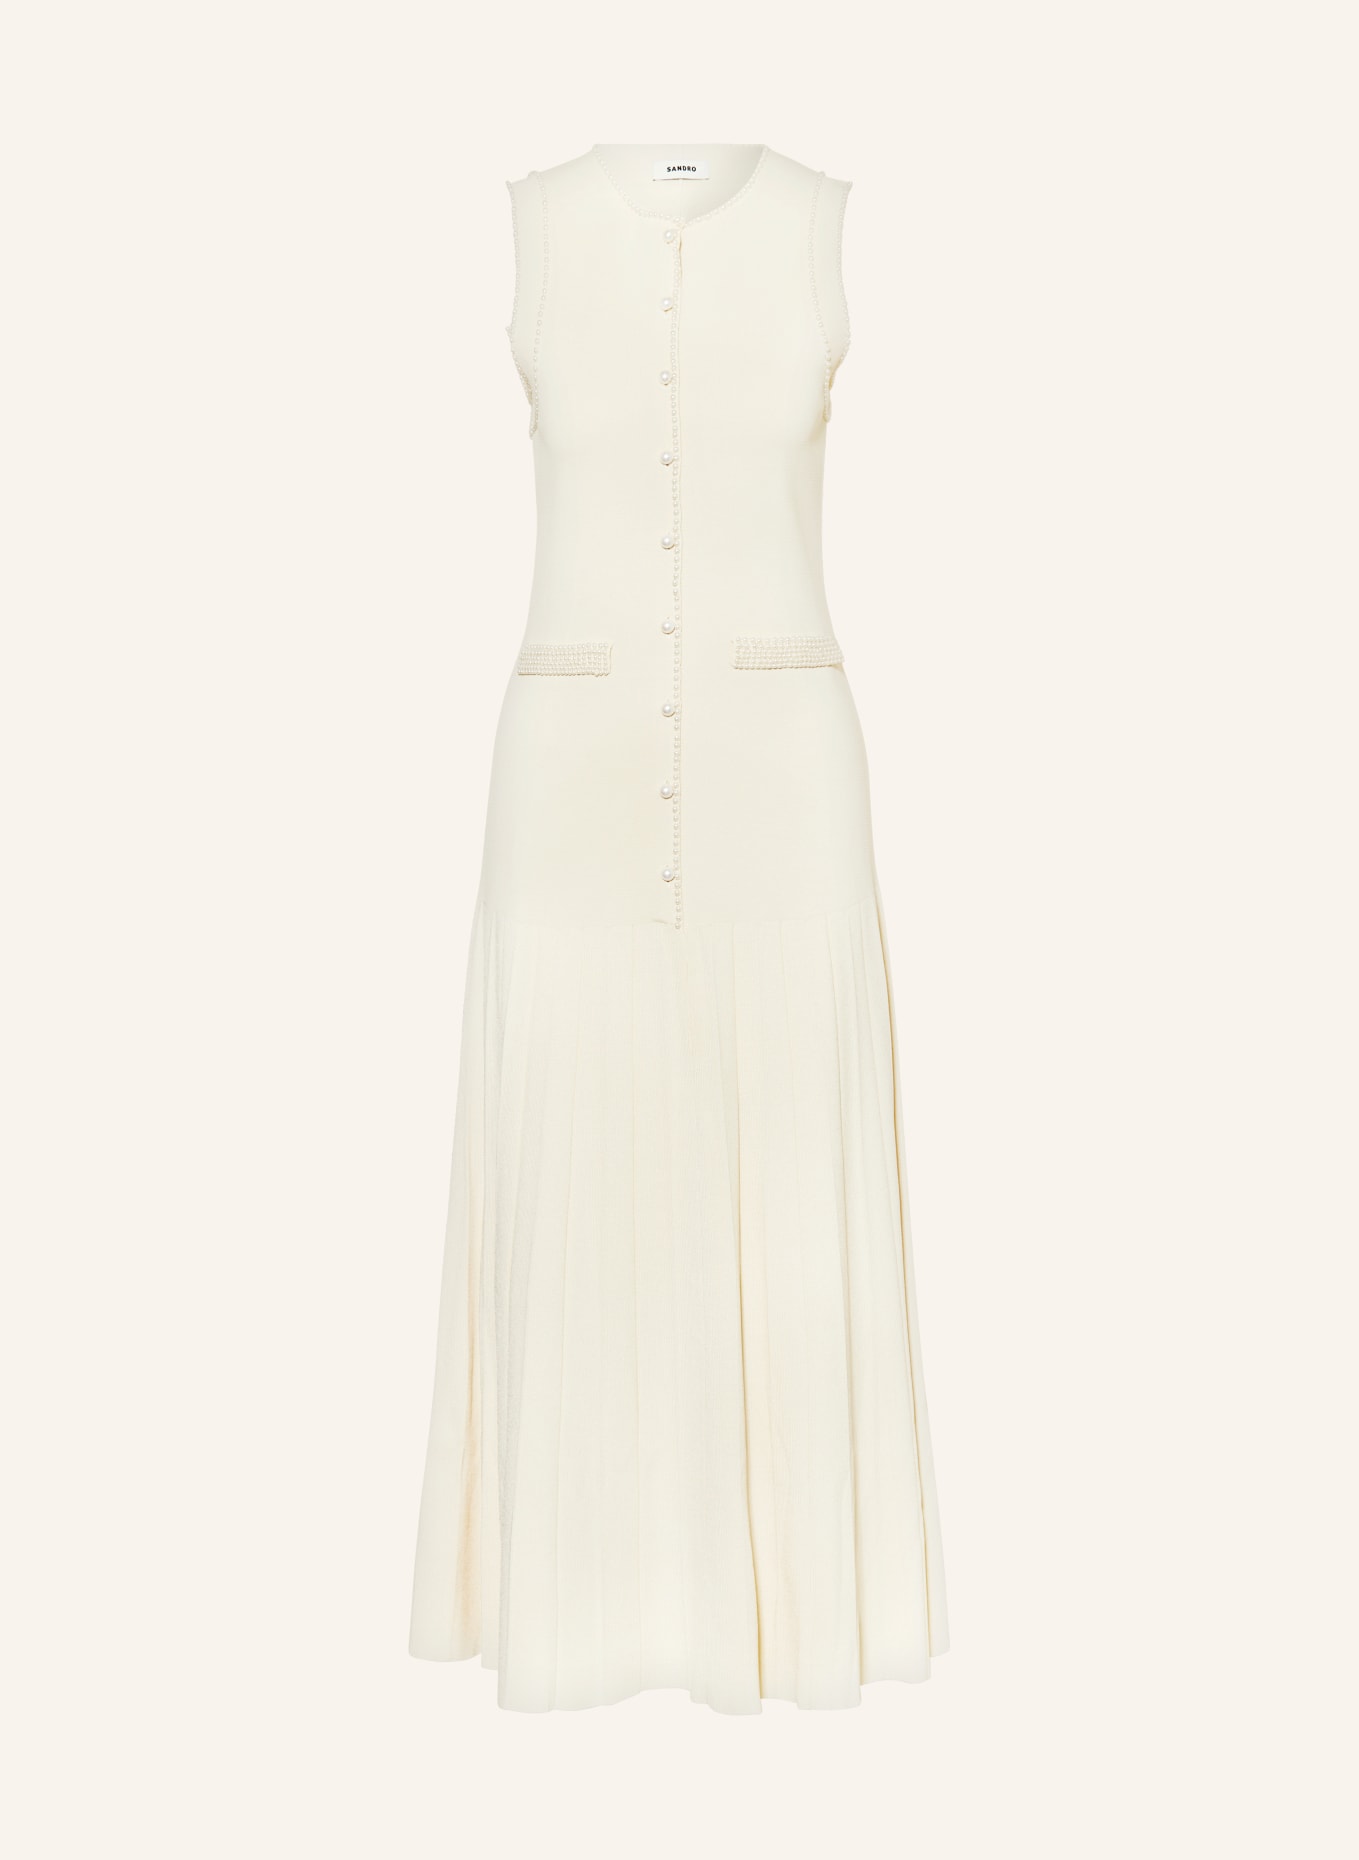 SANDRO Kleid mit Schmuckperlen, Farbe: BEIGE (Bild 1)